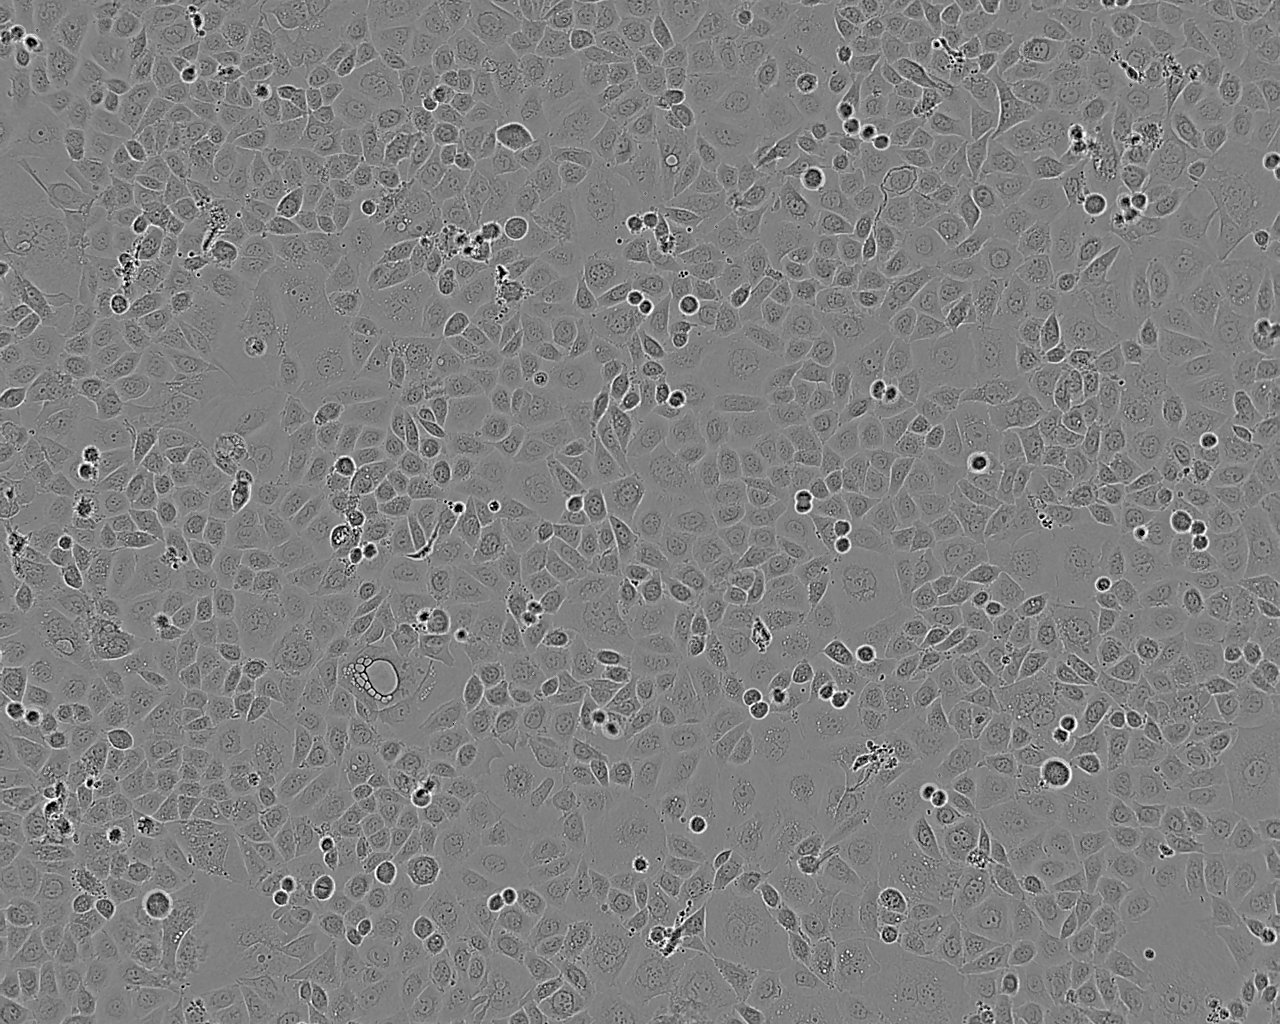 COR-L105 人原发性非小细胞肺癌细胞系